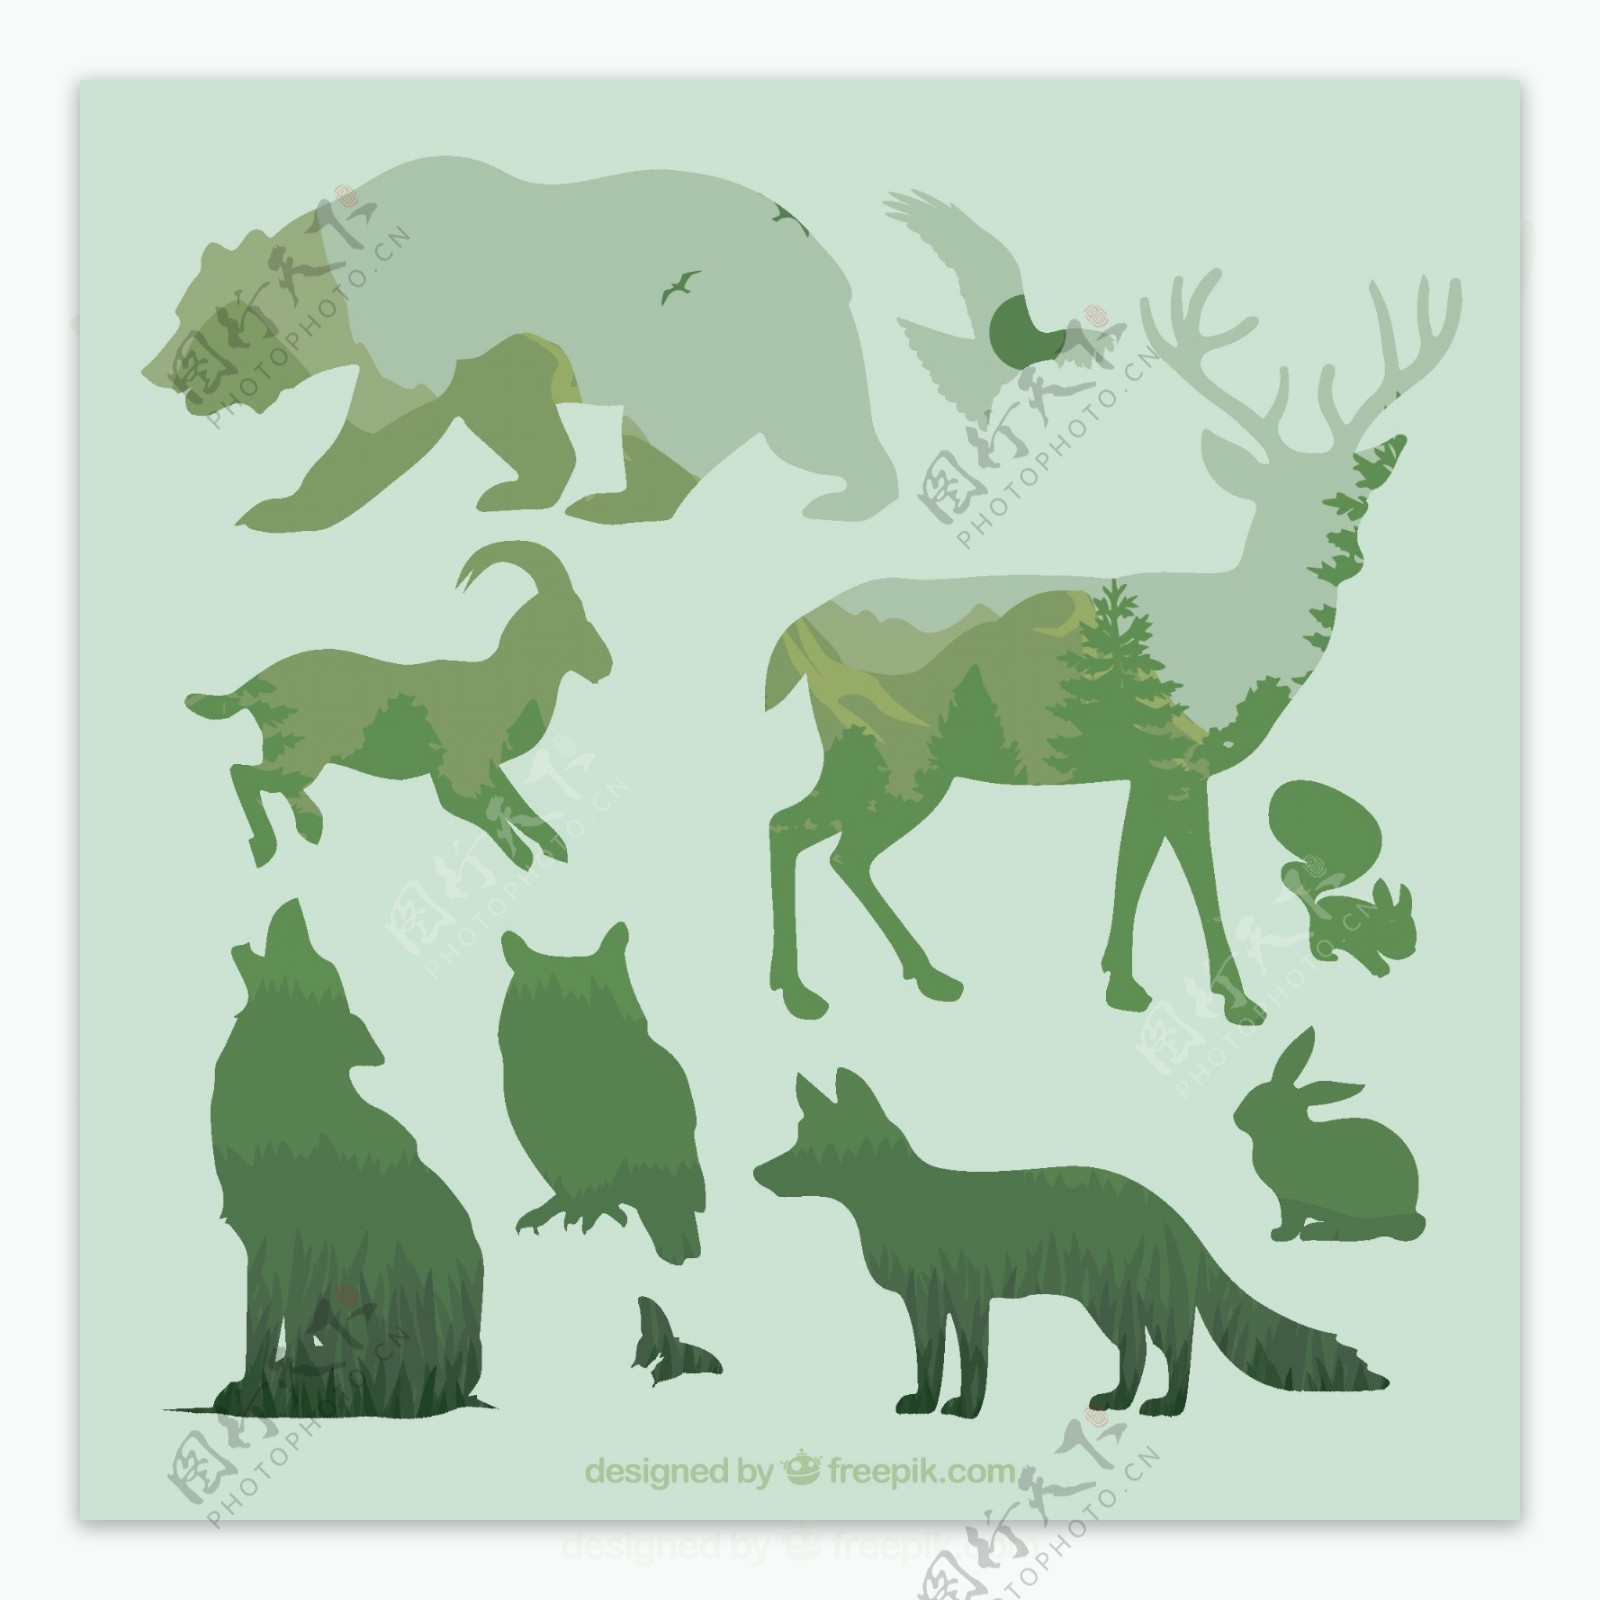 森林动物叠影